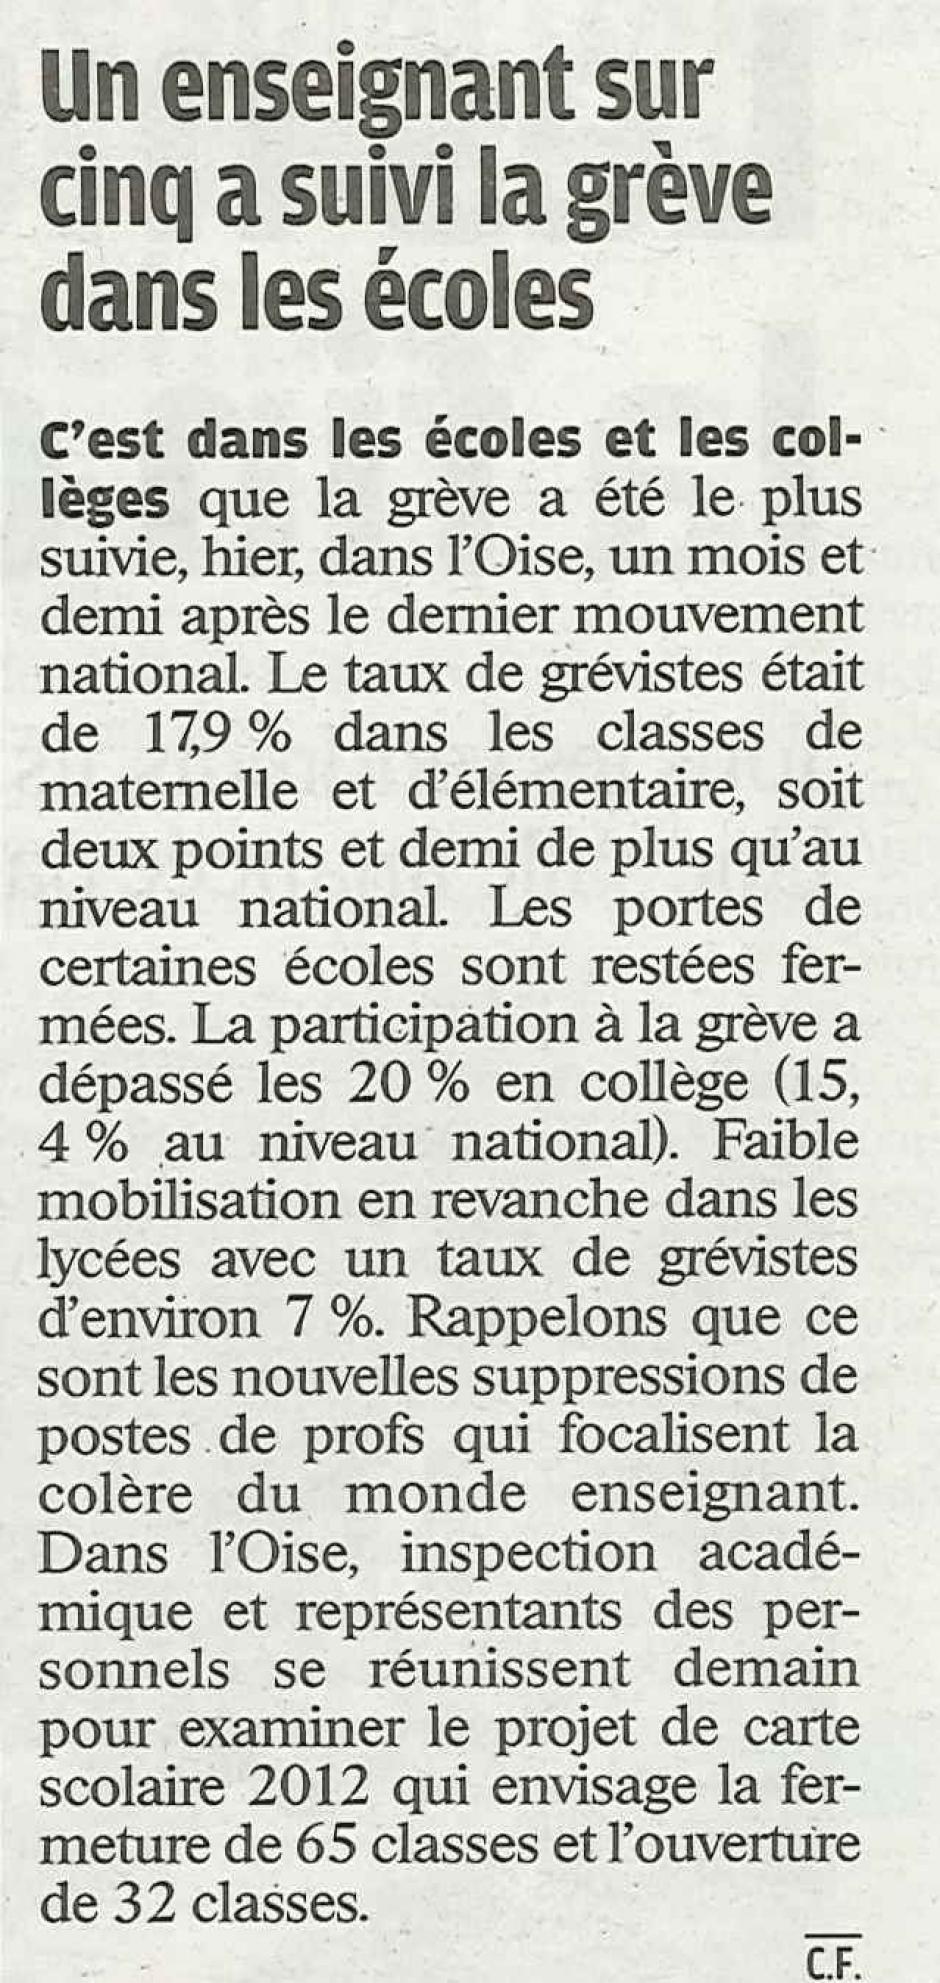 20120201-LeP-Oise-Un enseignant sur 5 a suivi la grève dans les écoles (Ministère)